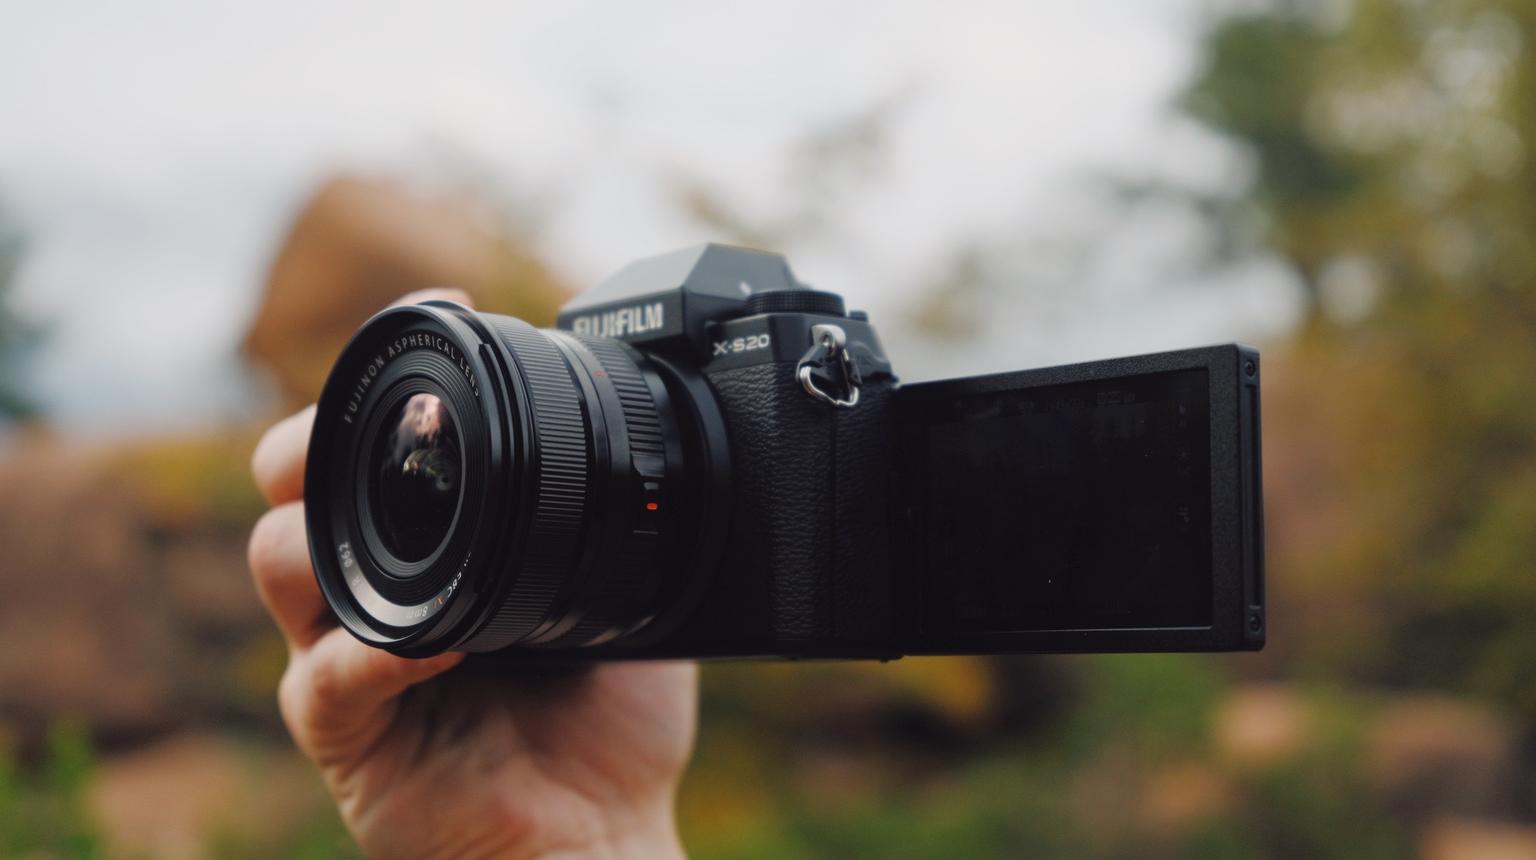 The Ultimate 1LB Camera | Fujifilm X-S20 Camera Review